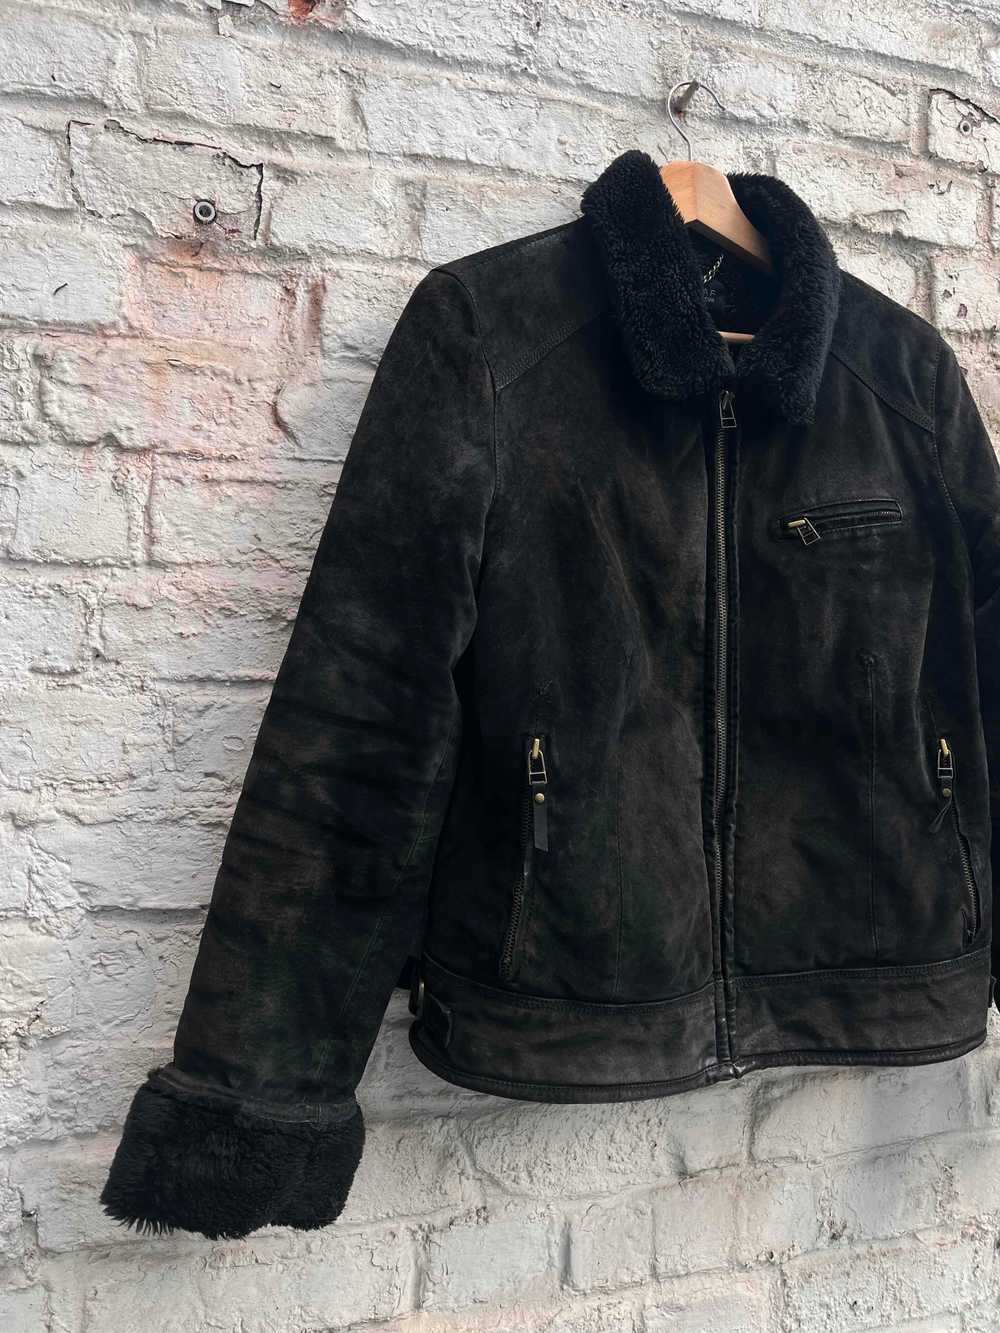 NafNaf jacket - NafNaf leather jacket Perfect for… - image 2